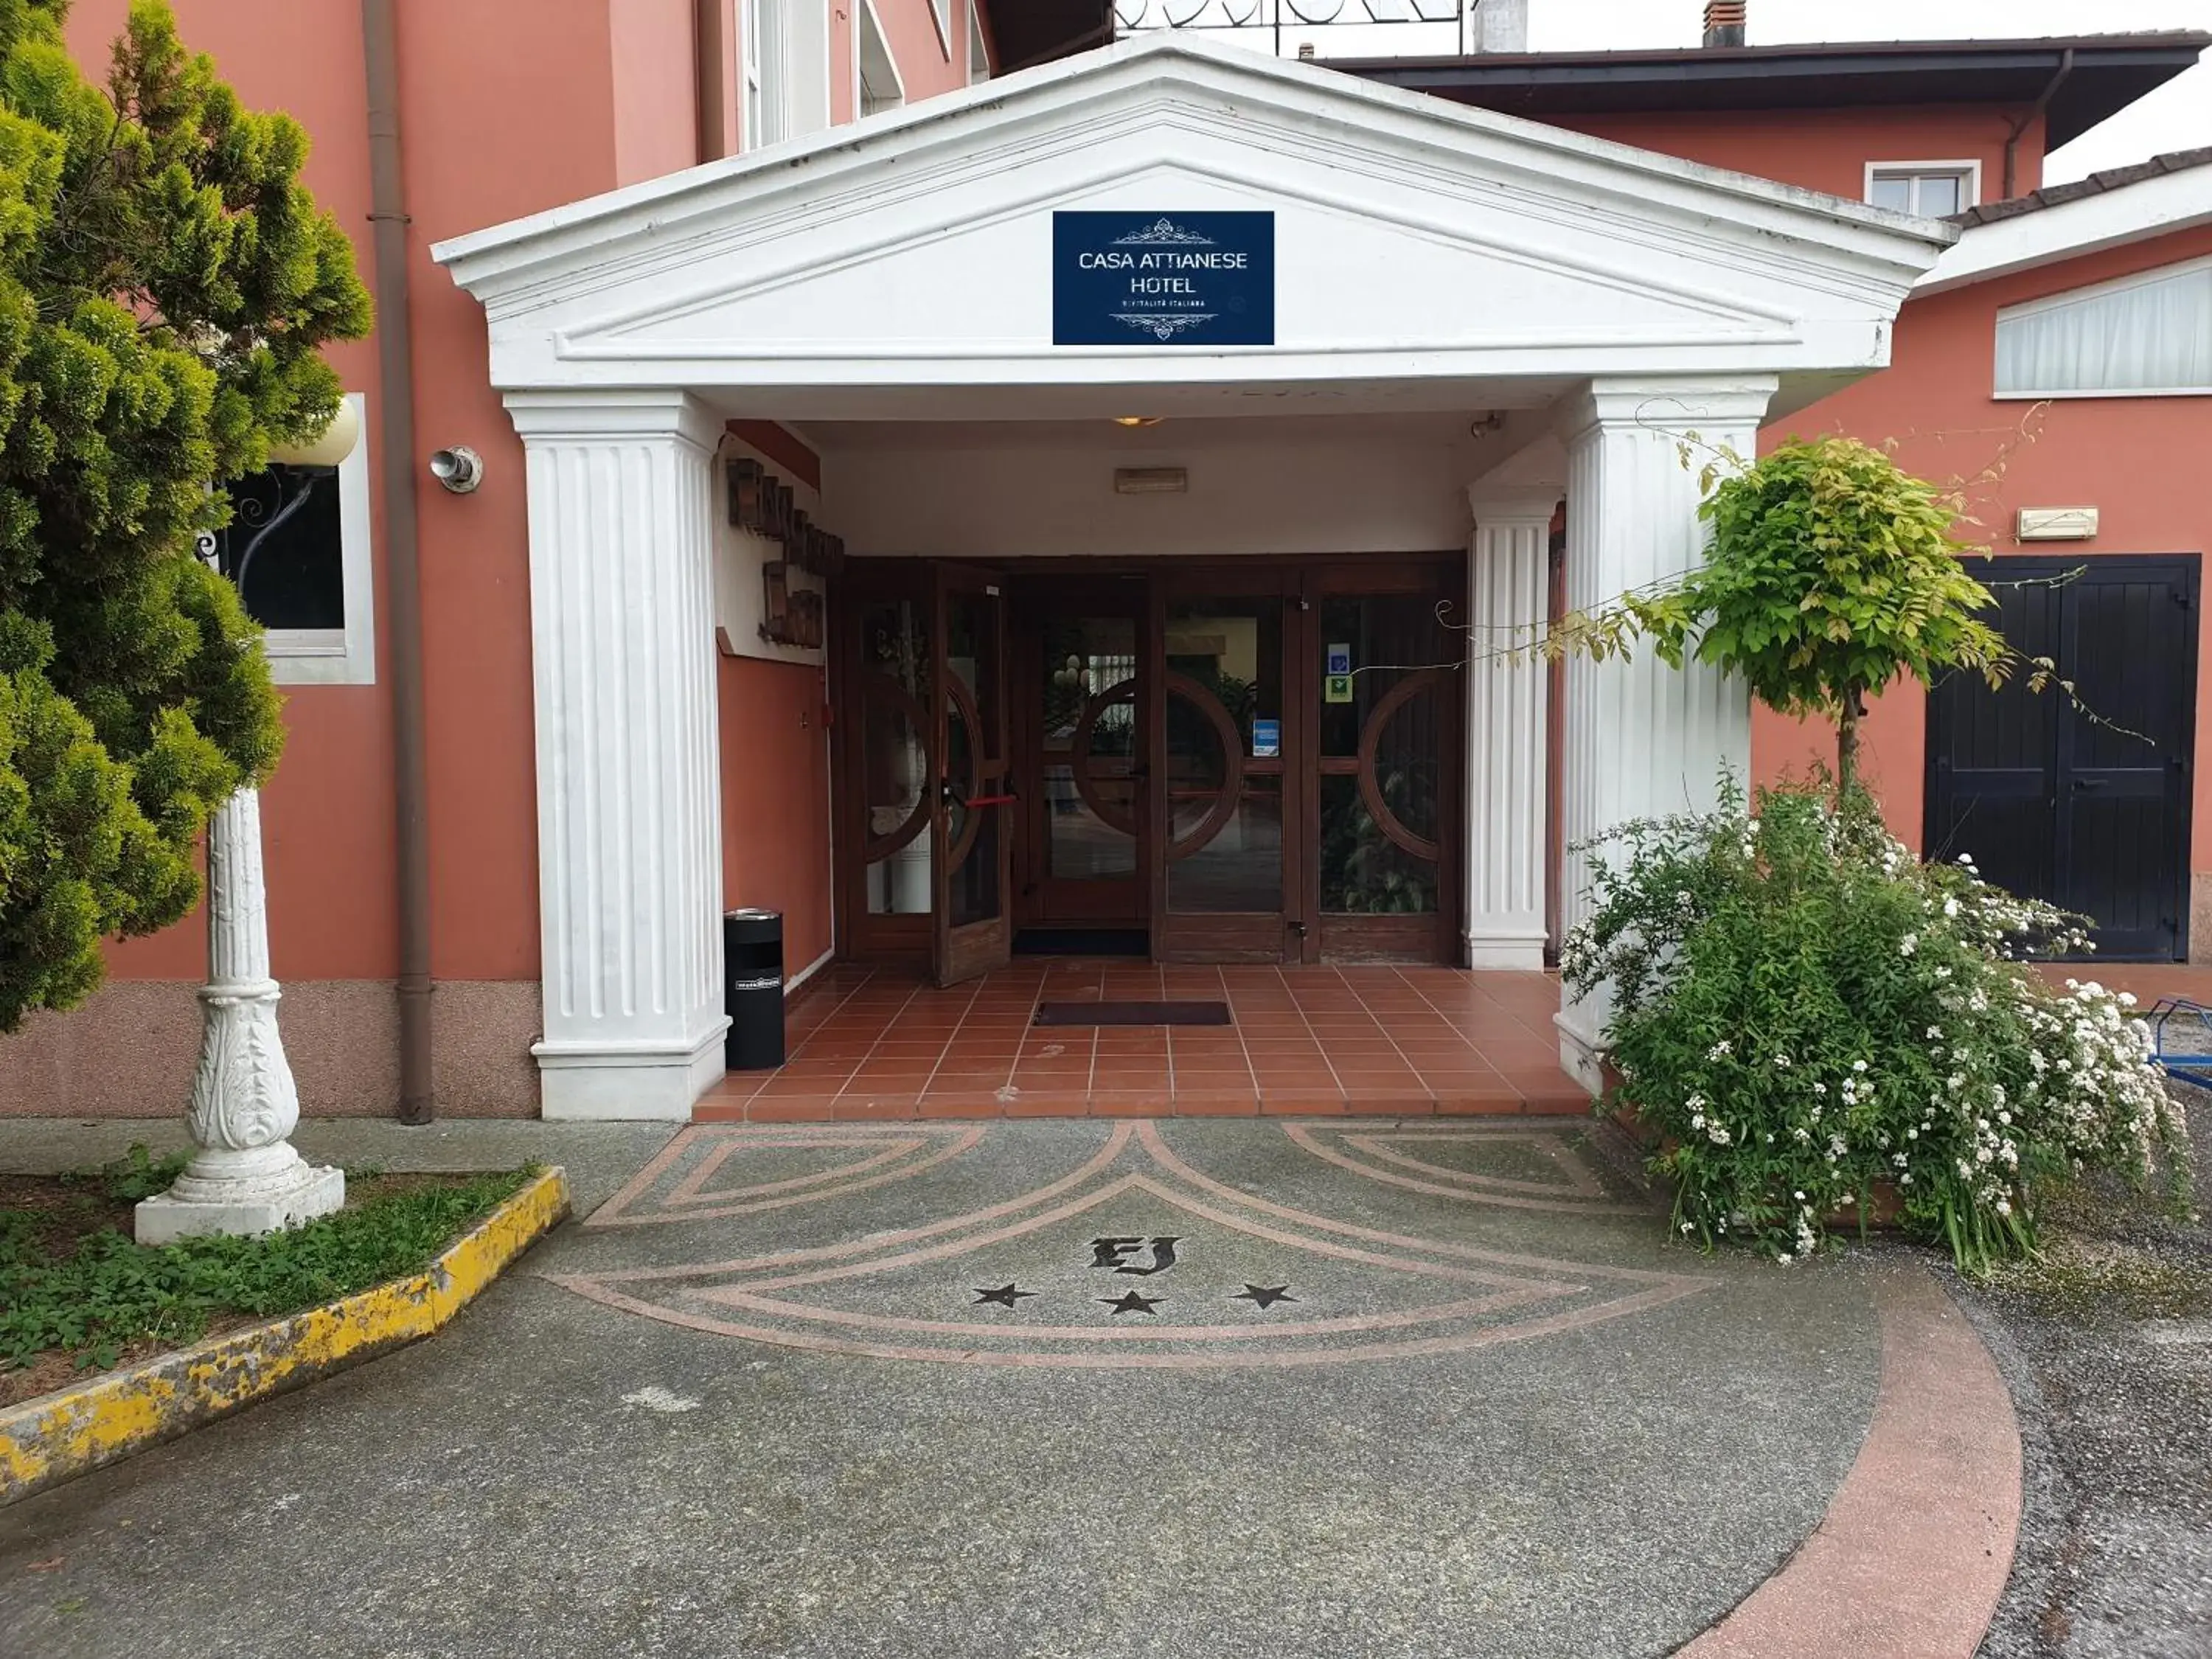 Facade/entrance in Attianese Hotel Restaurant